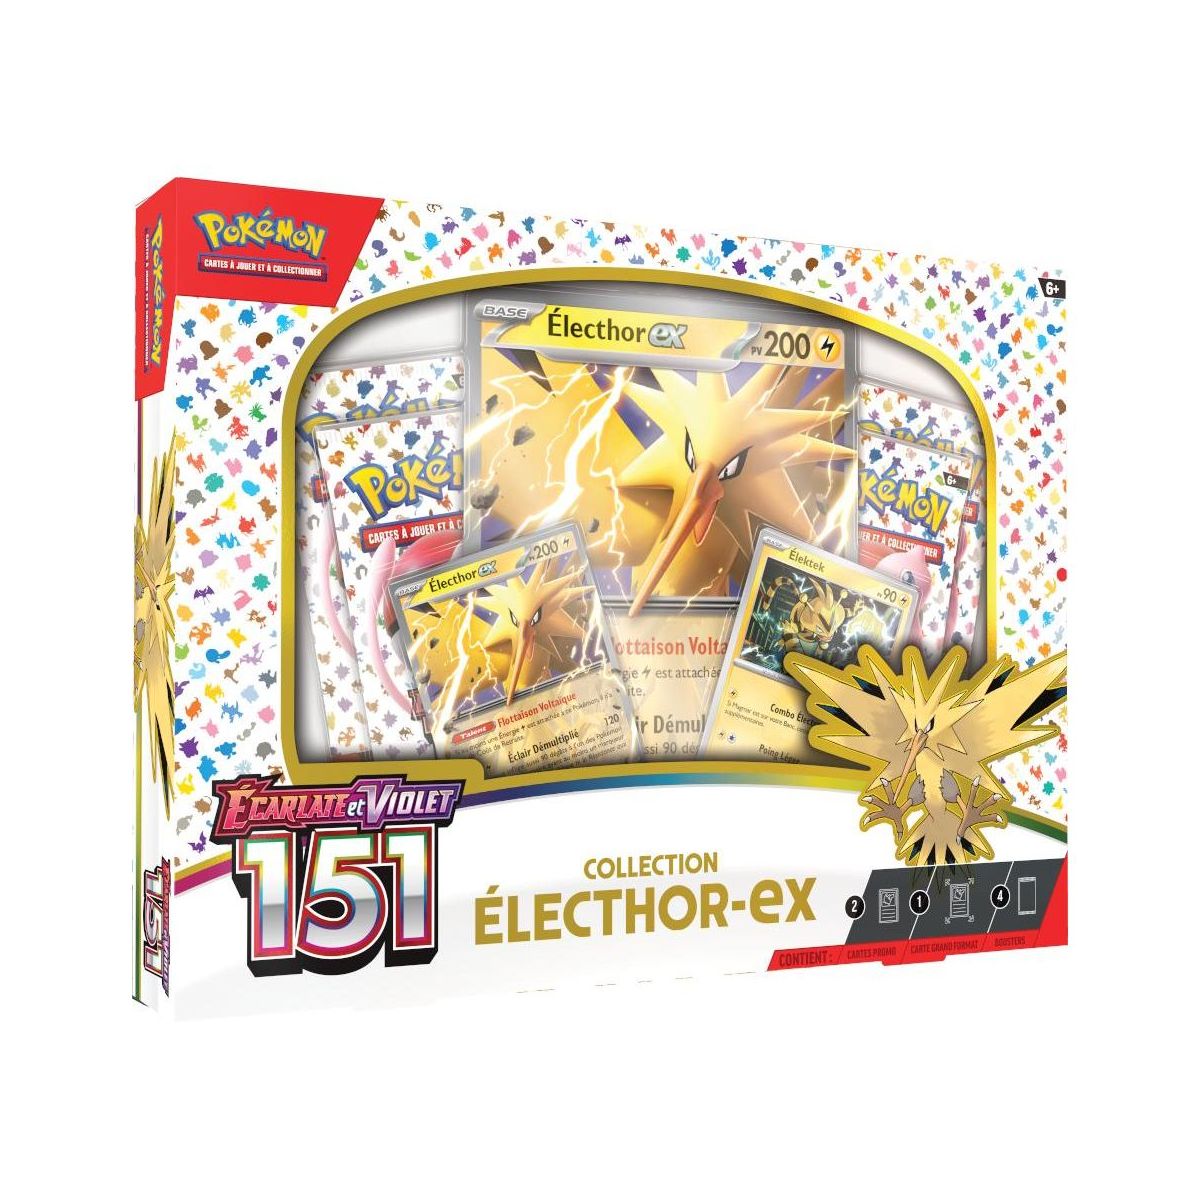 Pokémon - Coffret Collection Electhor EX - Ecarlate et Violet - 151 -[SV03.5 - EV03.5] - FR